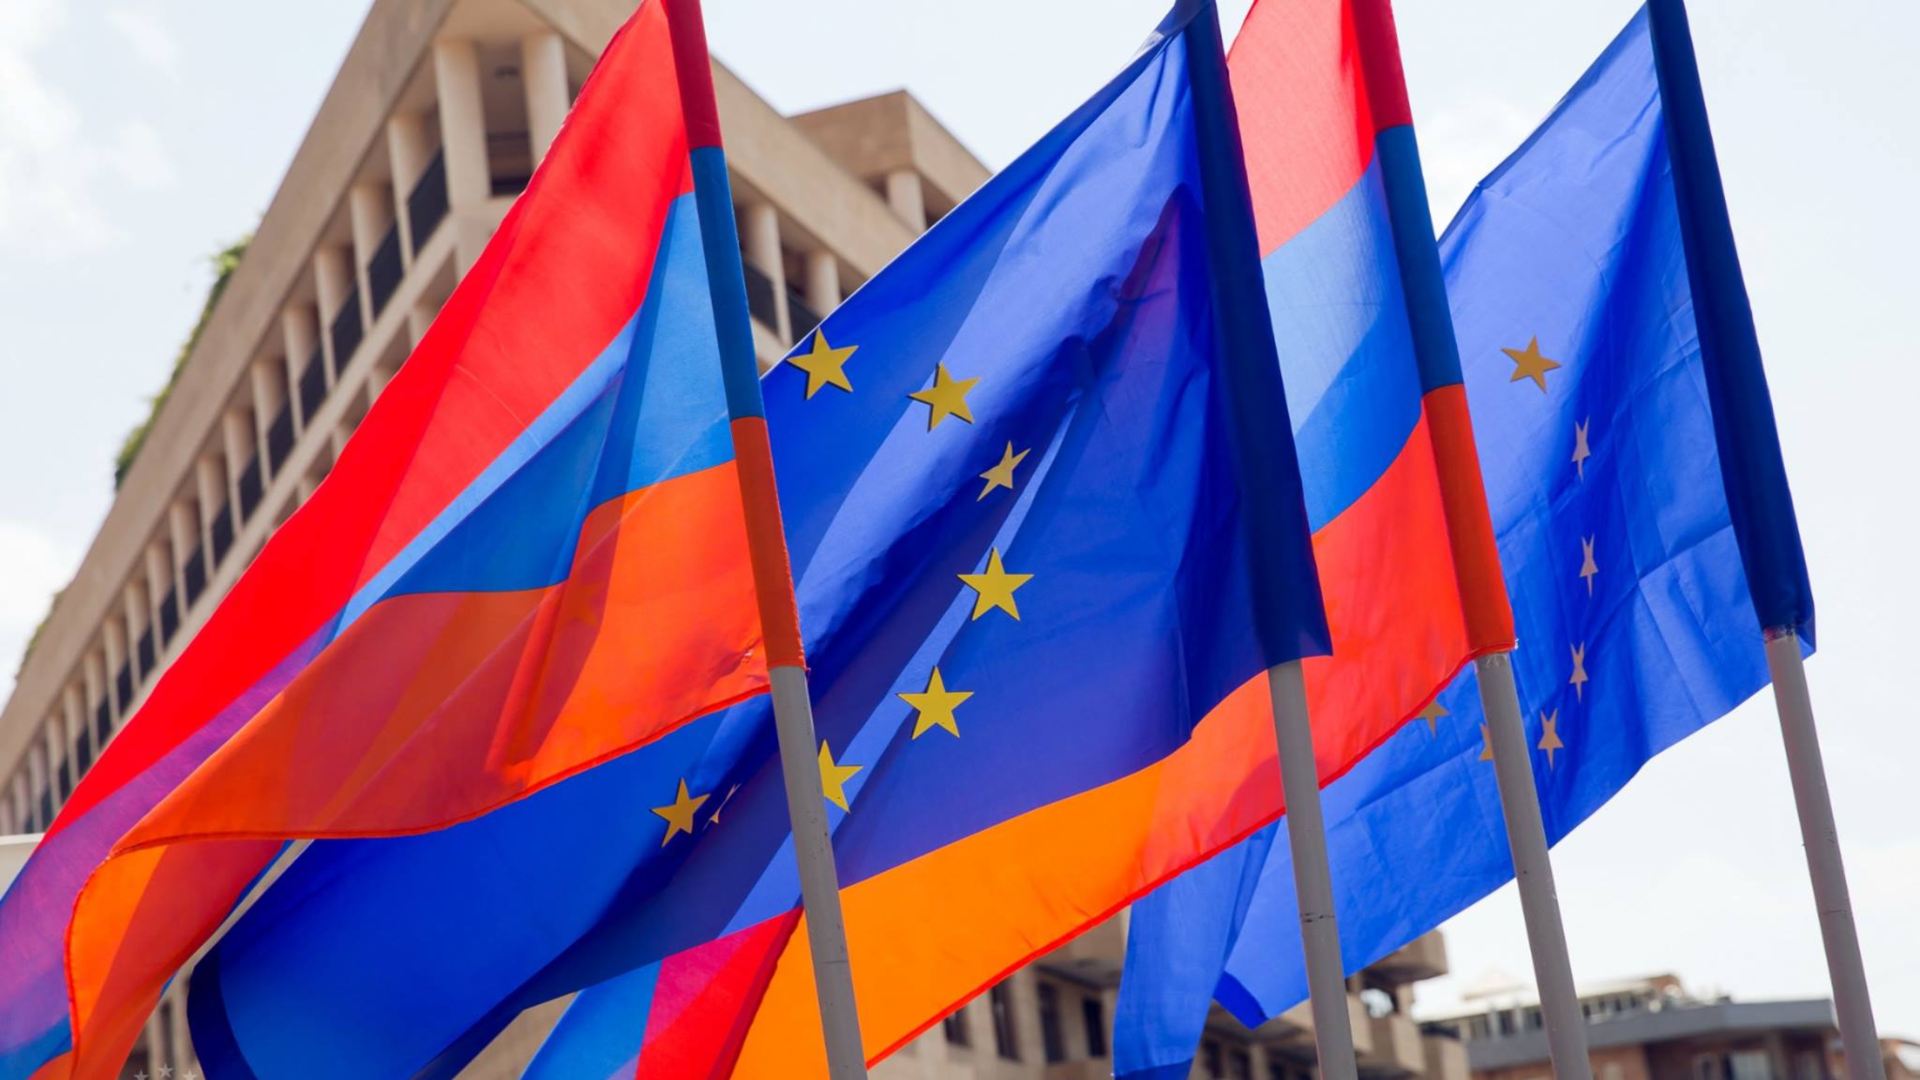 Հայաստանը կարող է ԵՄ-ին անդամակցելու հայտ ներկայացնել․ ԵՄ արտաքին գերատեսչության խոսնակ